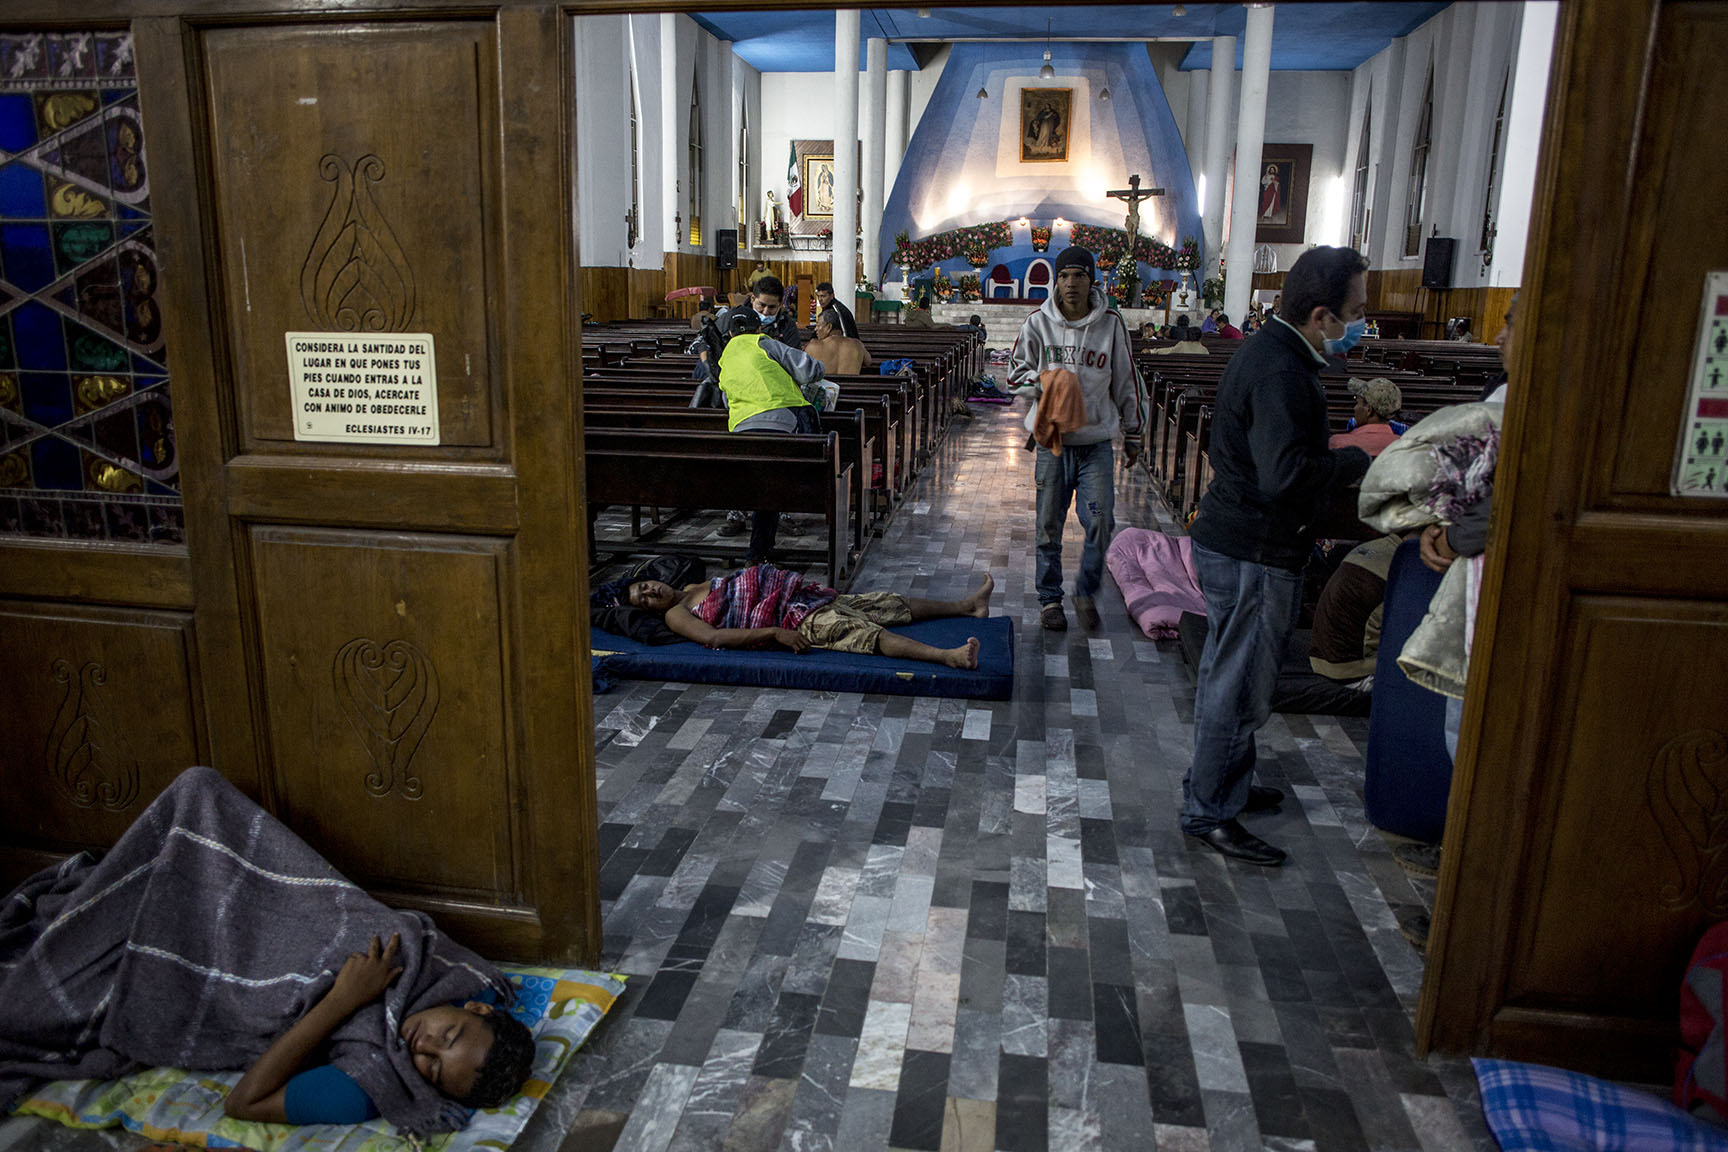 Los primeros migrantes llegados al albergue toman lugar en la iglesia de Nuestra Señora de la Asunción, en Puebla / Simone Dalmasso